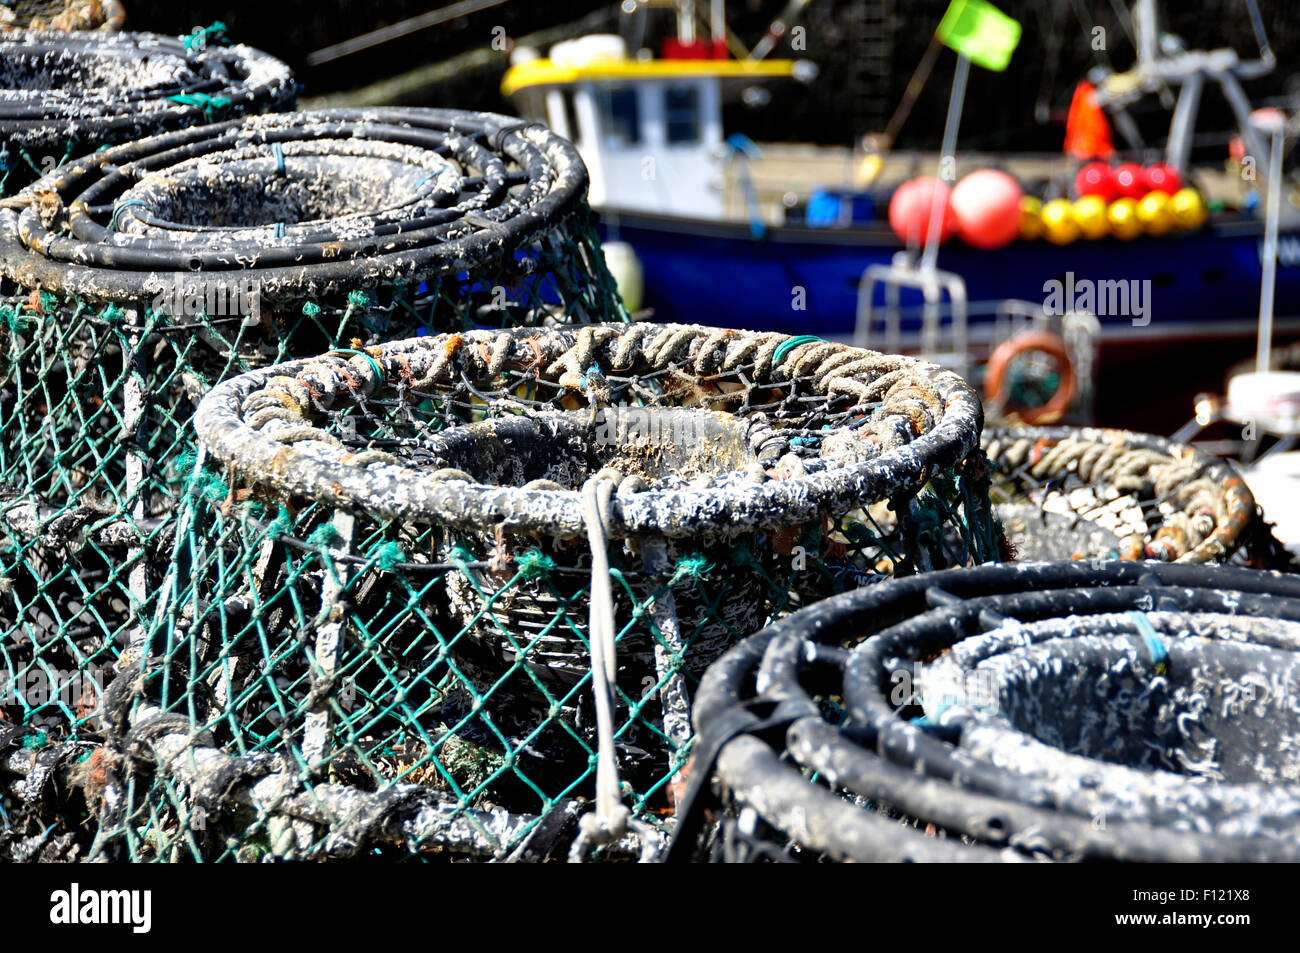 Cornouailles du nord - Ostional quay - des casiers à homard empilés - toile de bateau de pêche - differential focus - plein soleil Banque D'Images